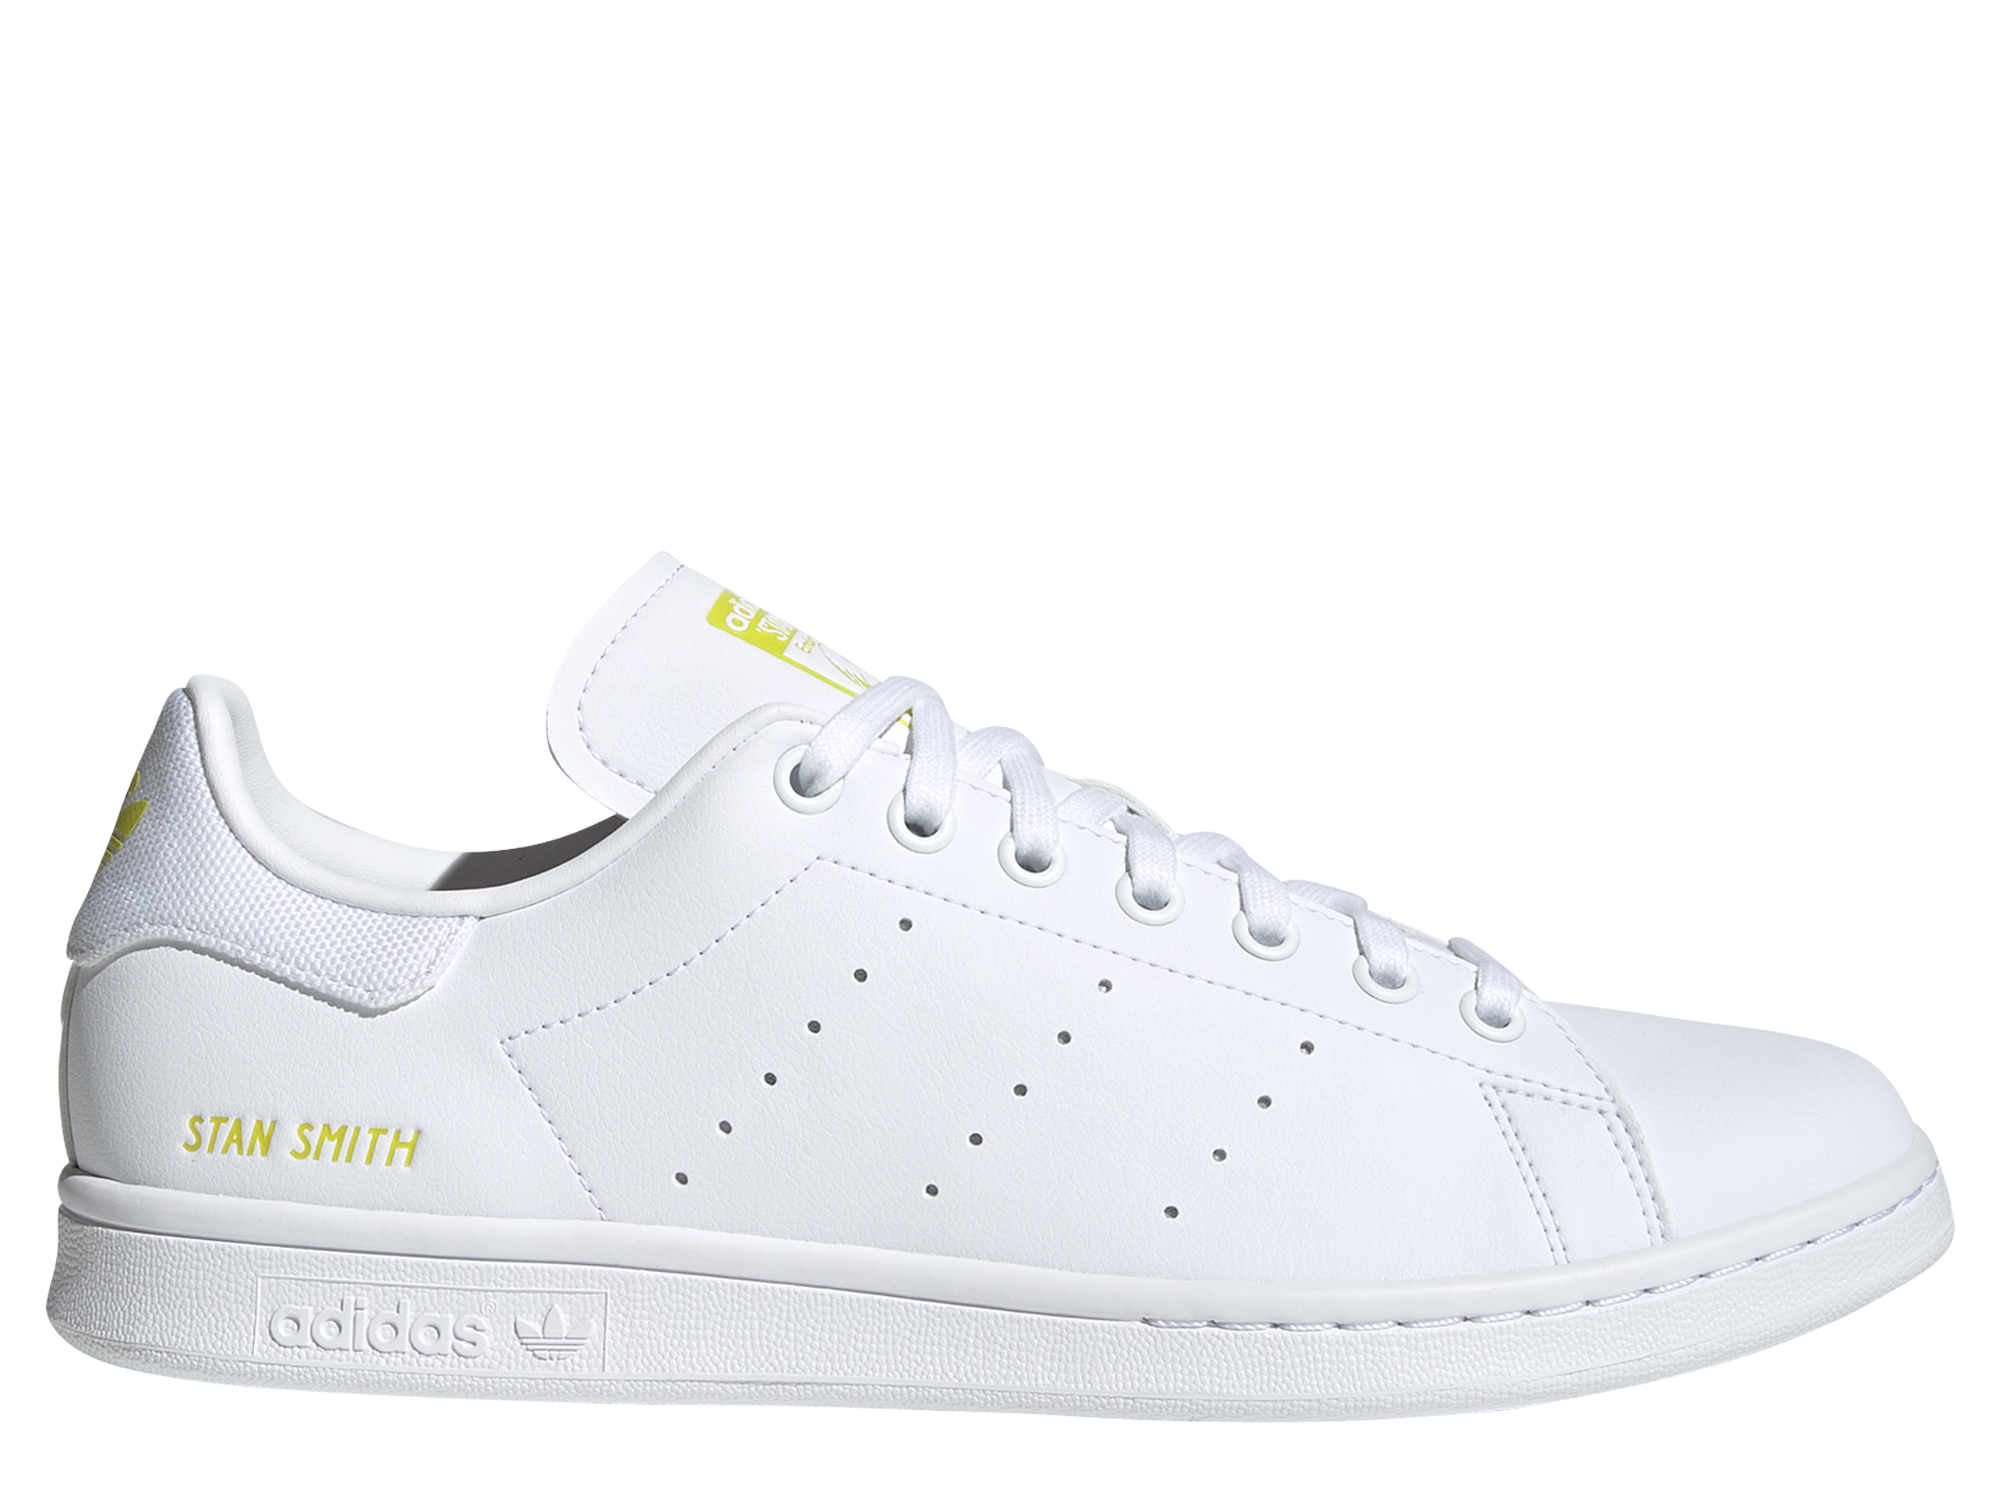 Adidas Originals Stan Smith Herren Sneaker